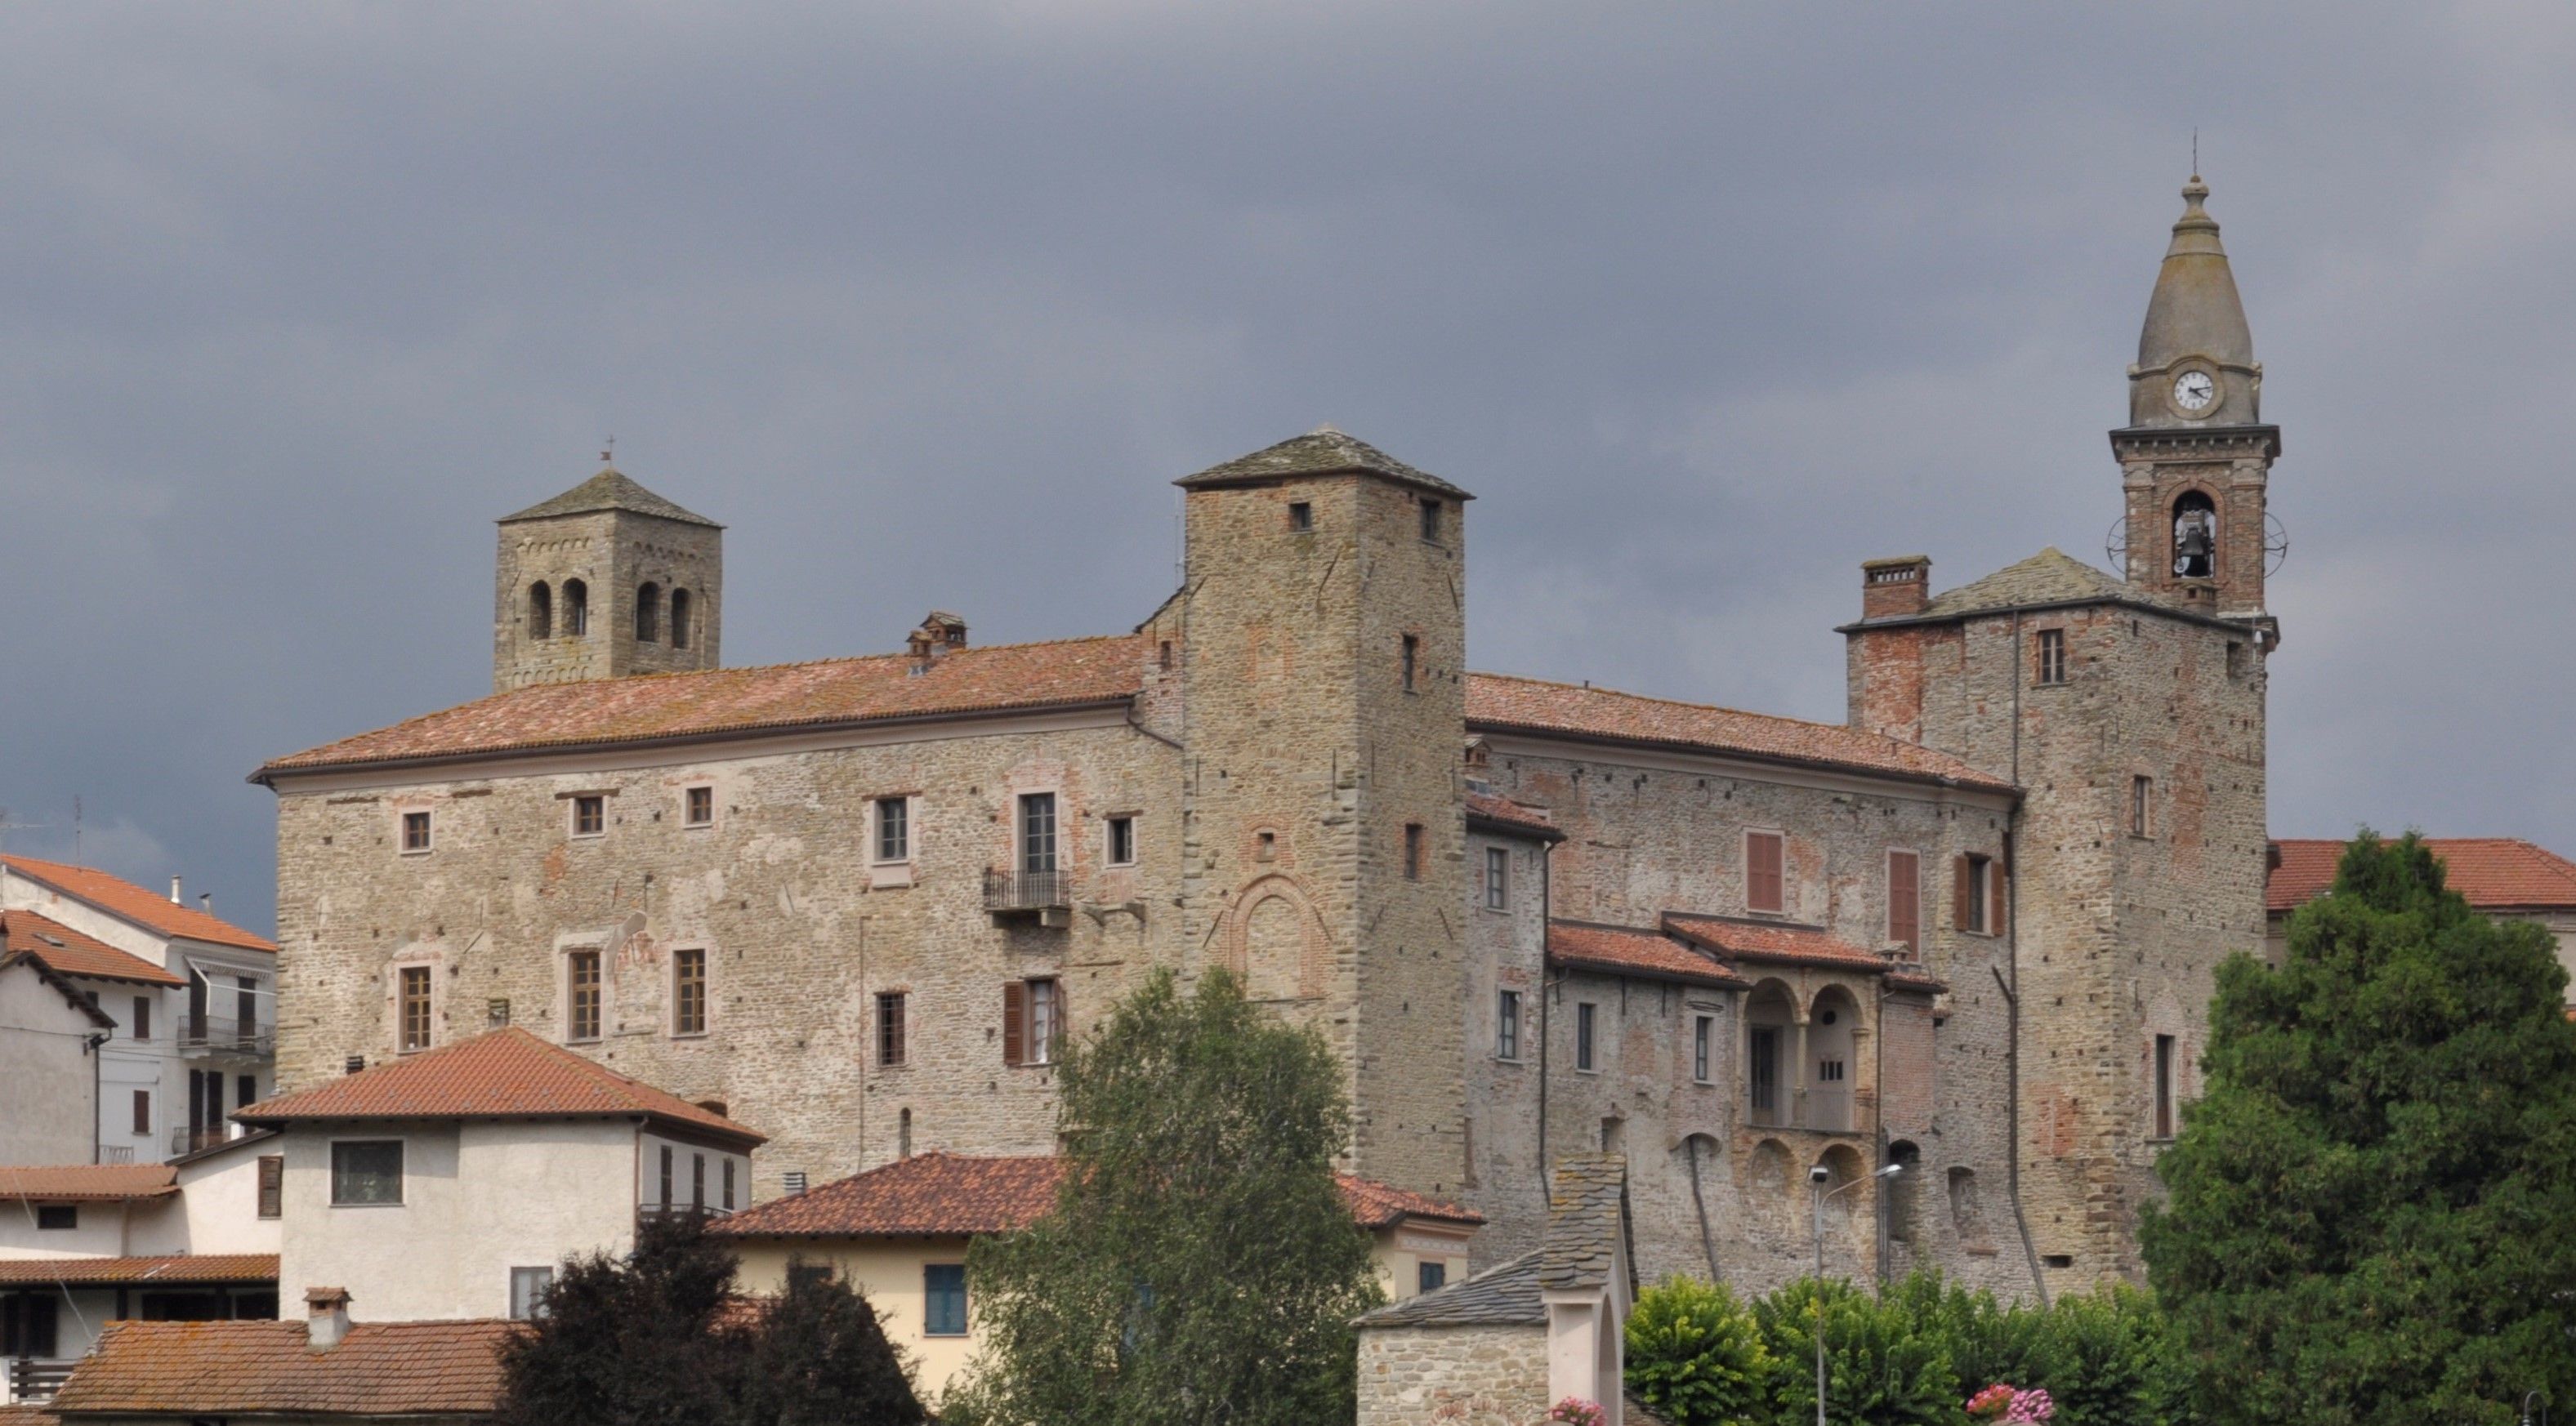 Castle of Monastero Bormida, Monastero Bormida (Asti), Piedmont, Italy